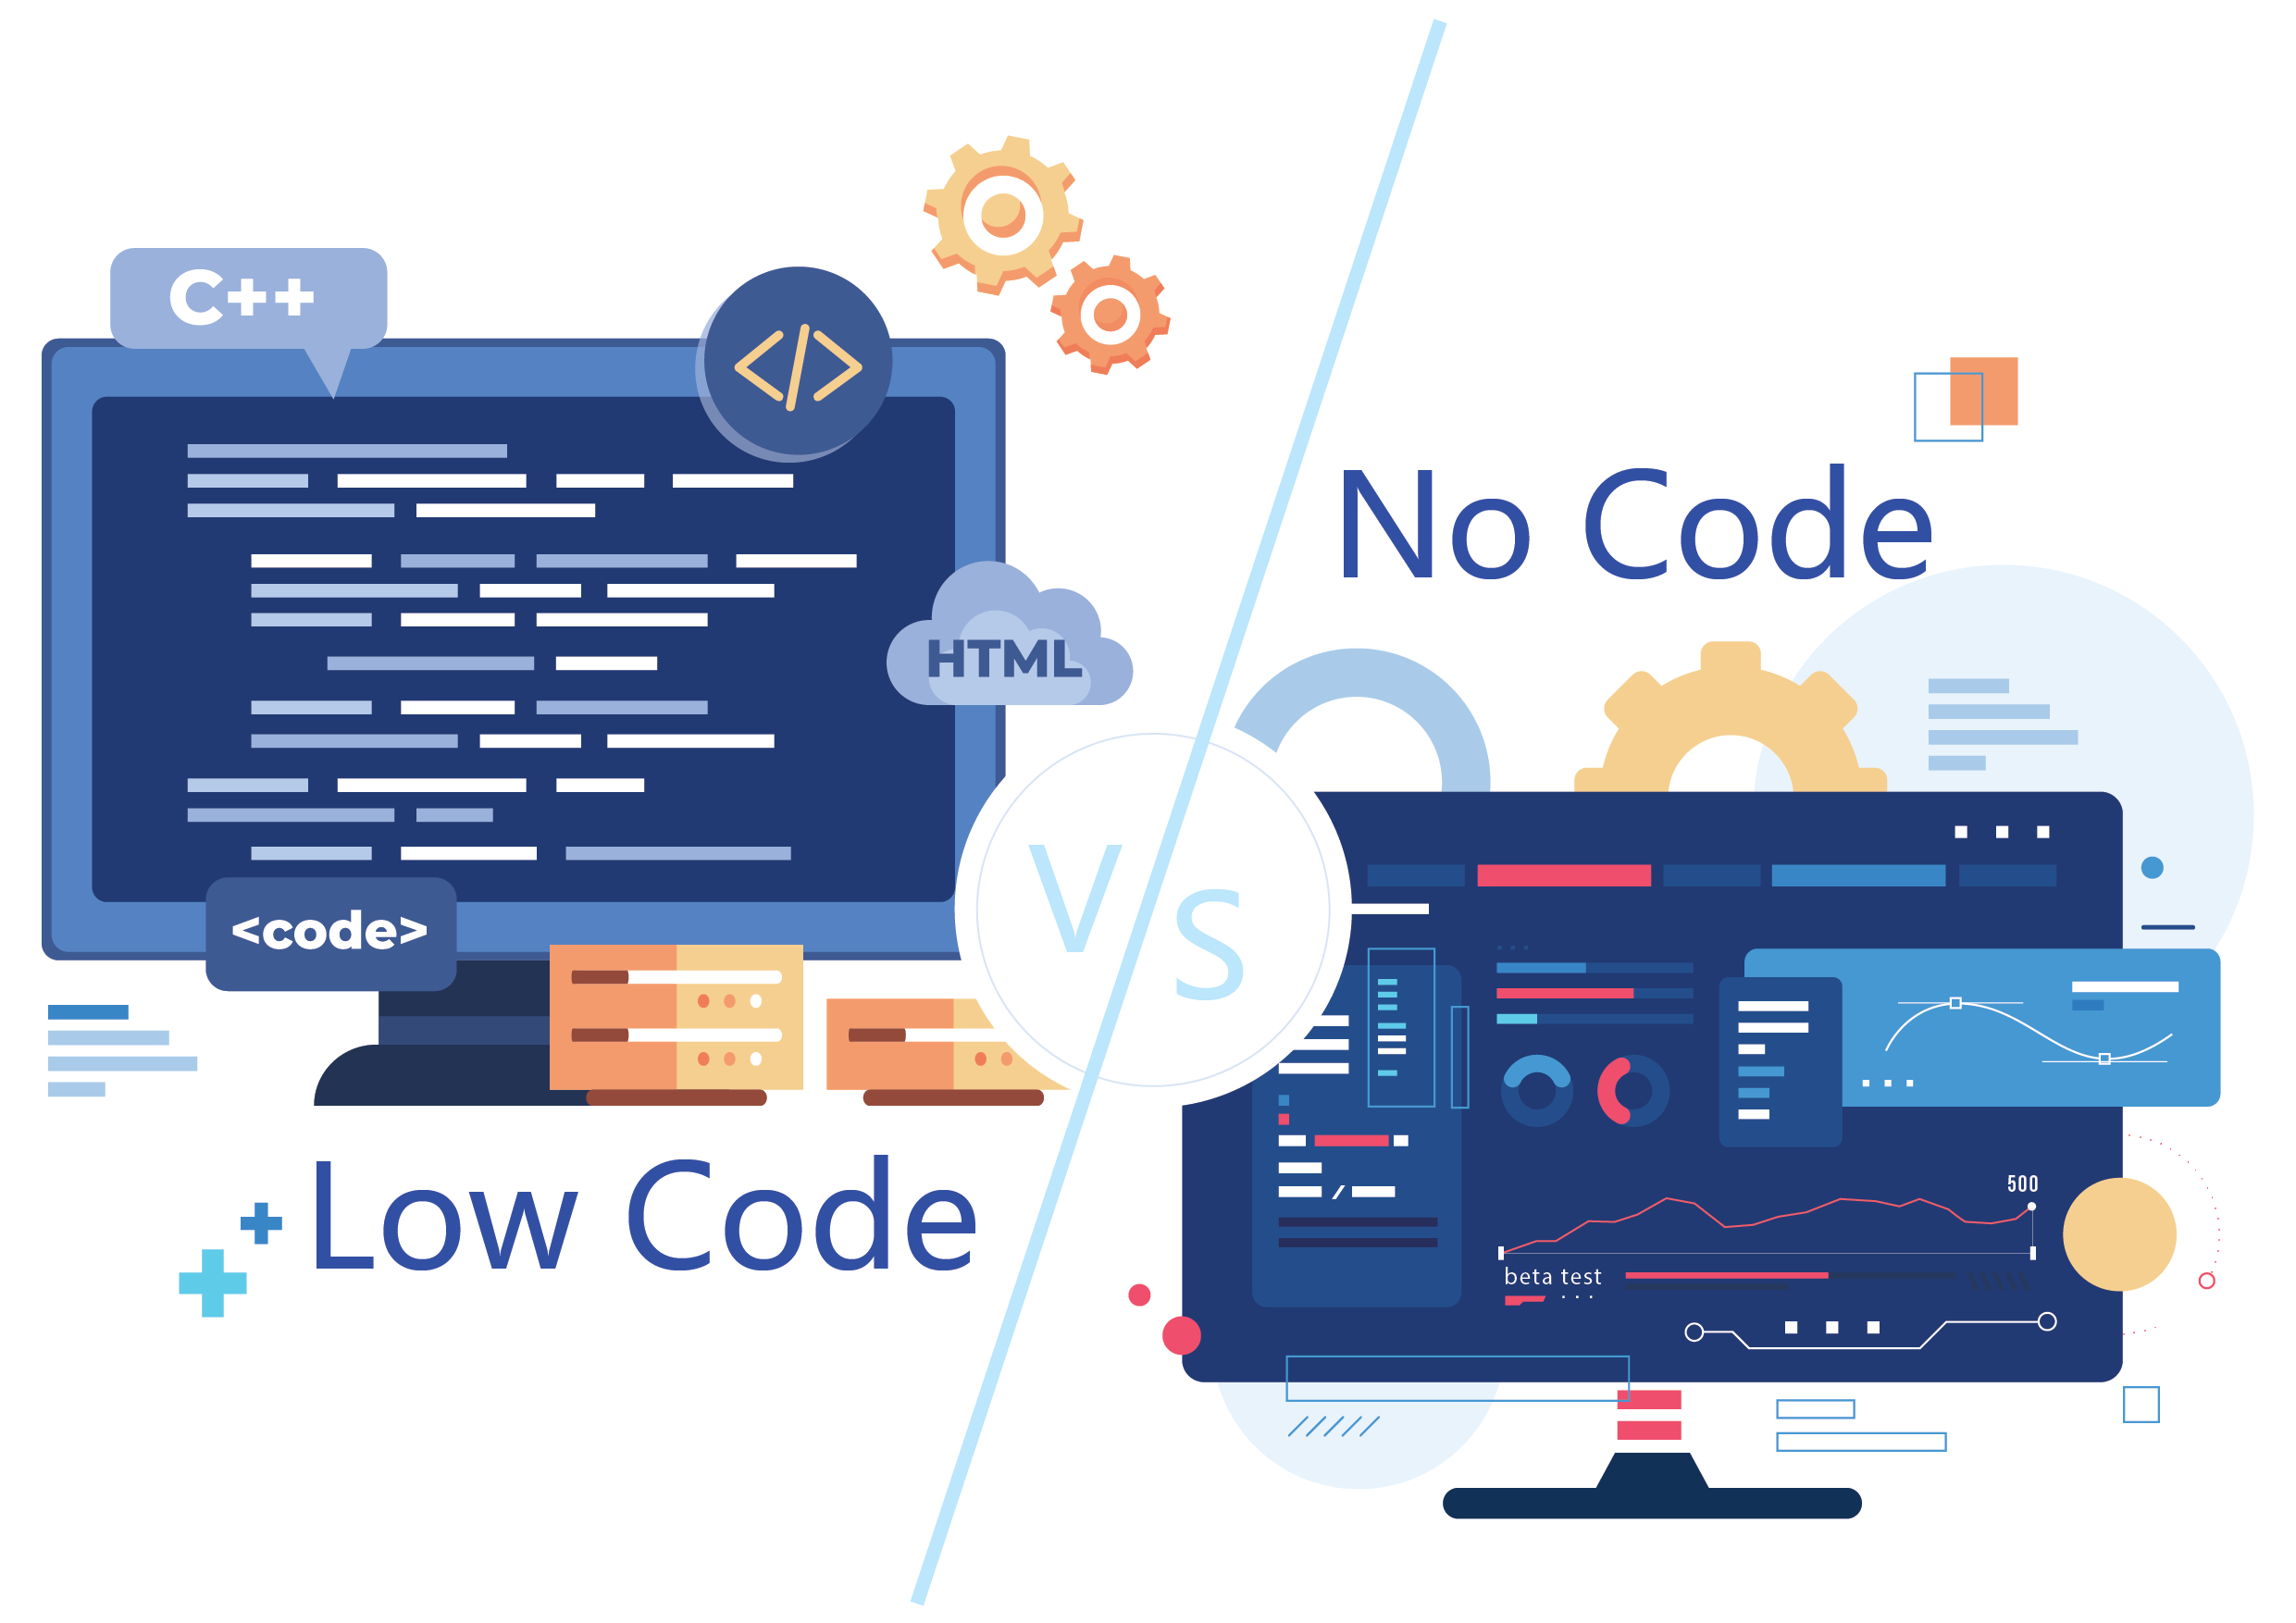 low code vs no code